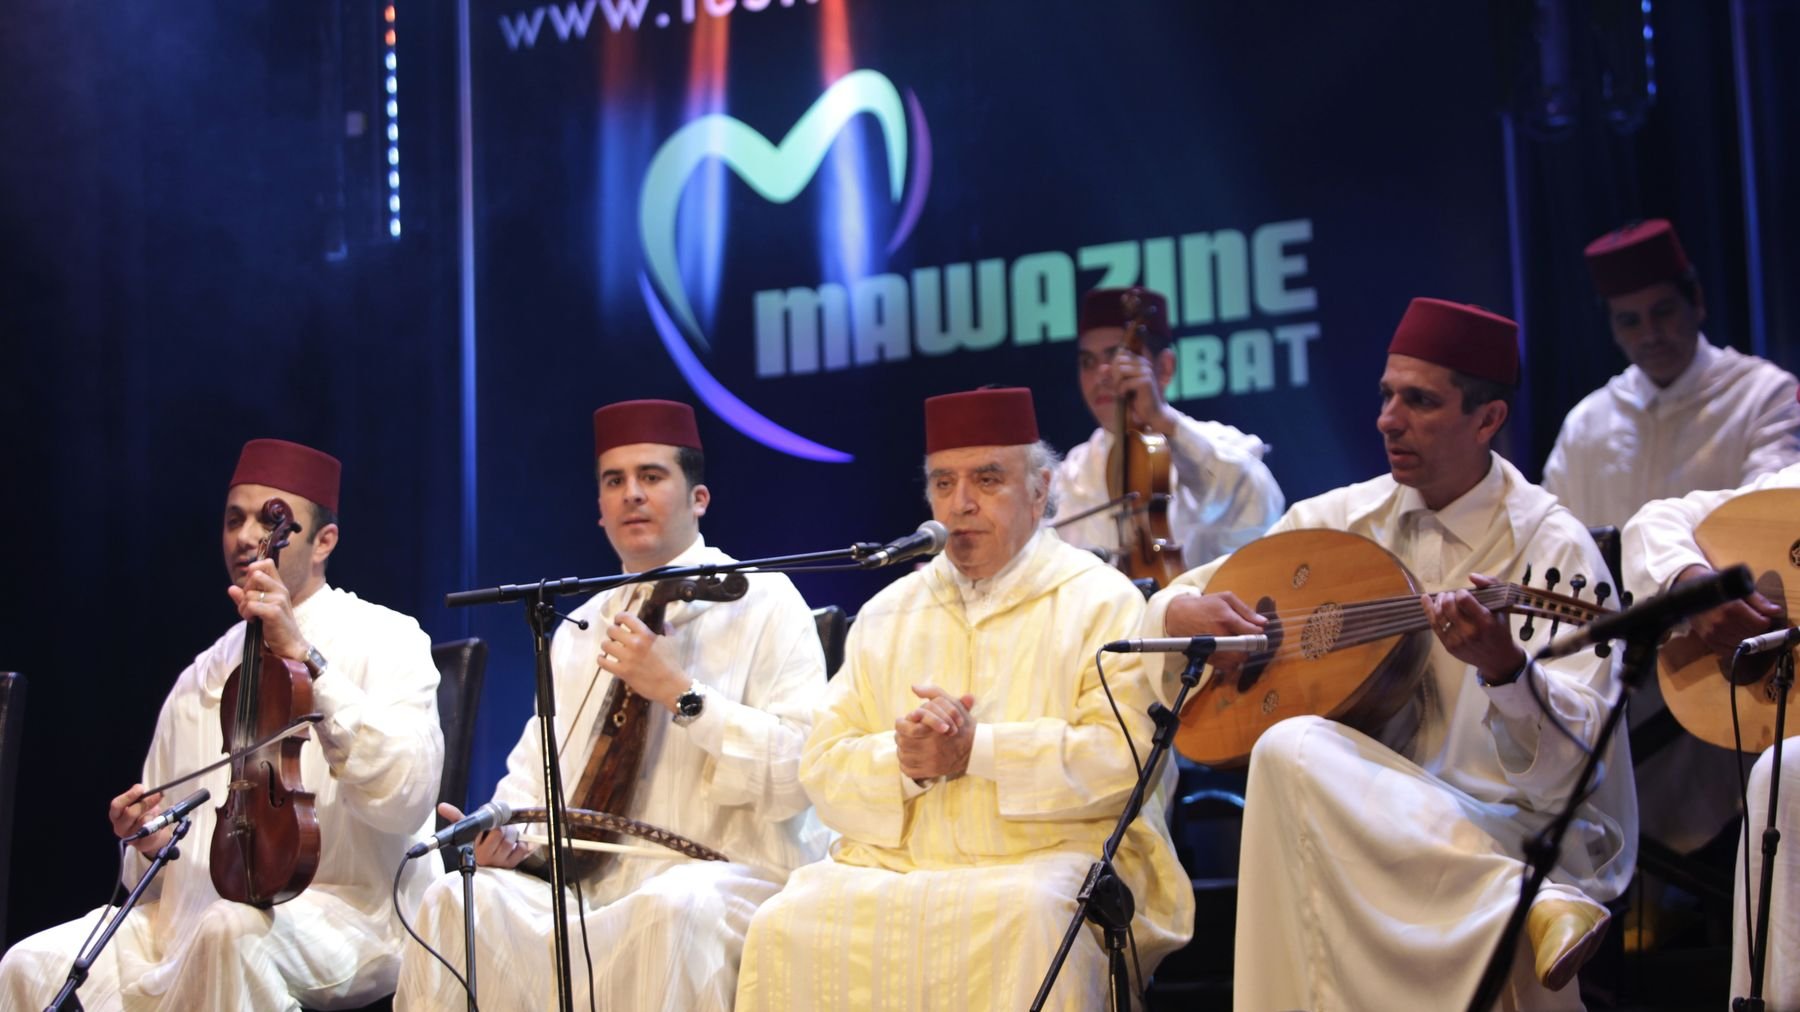 Le maître marocain du tarab el andaloussi, qui a fêté en novembre 2013 ses 50 ans de carrière, a fait s'élever dans la salle sa voix fabuleuse, portée par des rythmes suaves et onduleux.  
